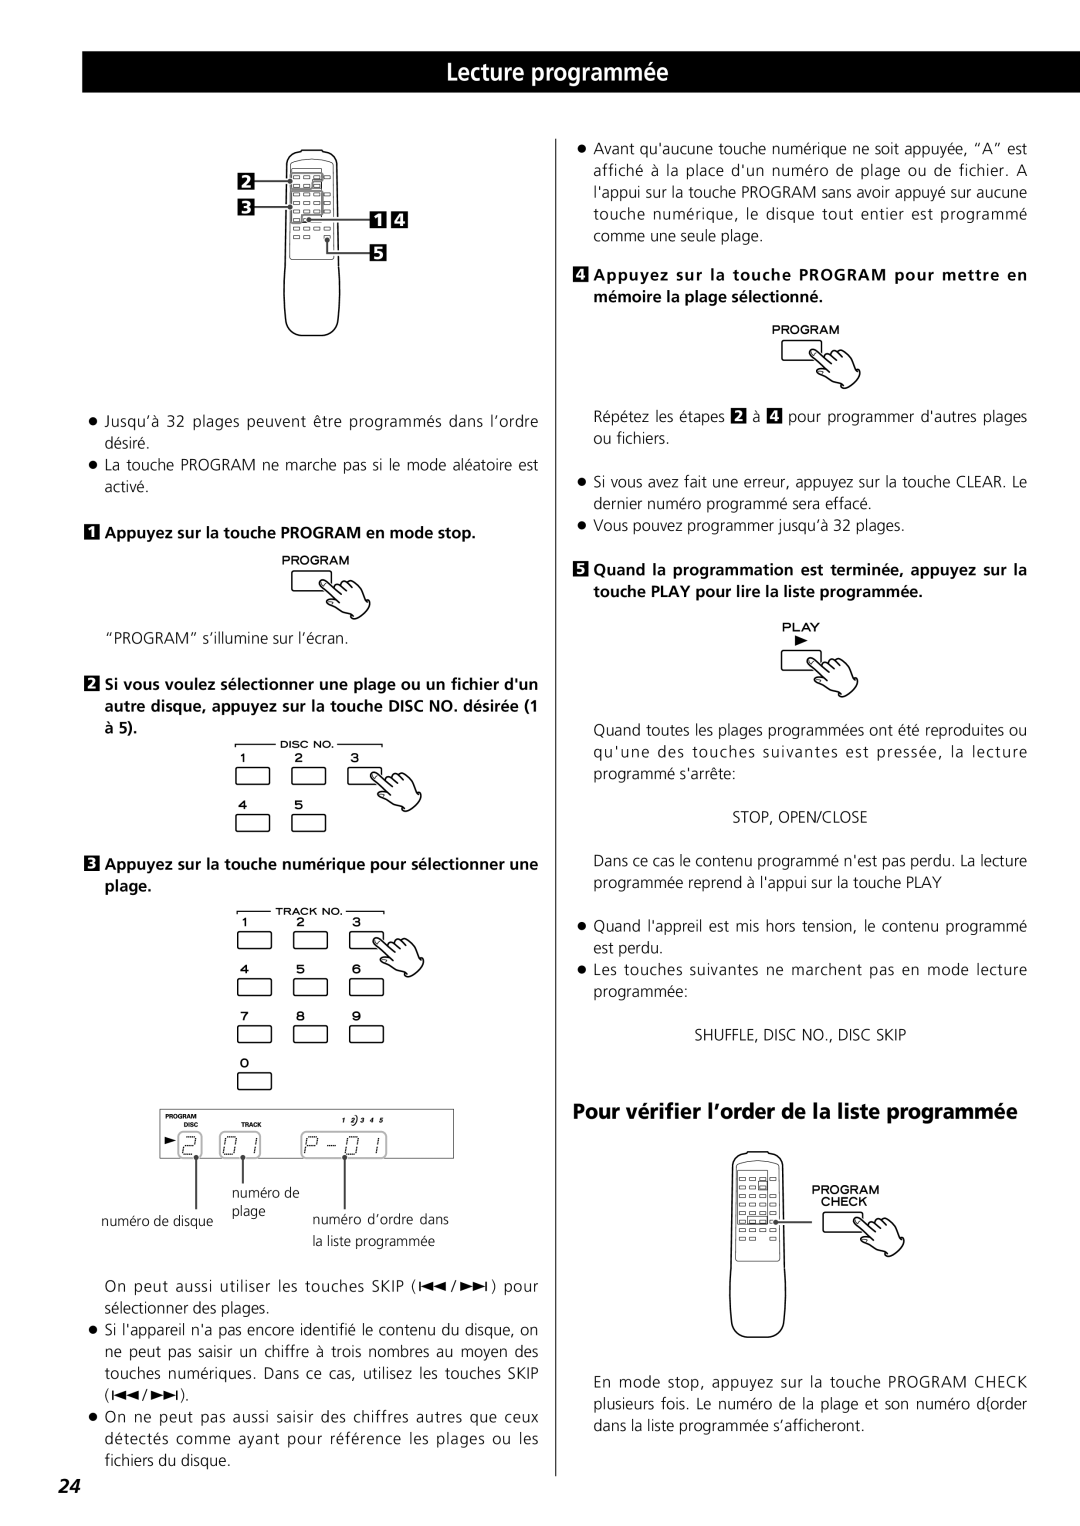 Teac PD-D2610 owner manual Lecture programmée, Pour vérifier l’order de la liste programmée 